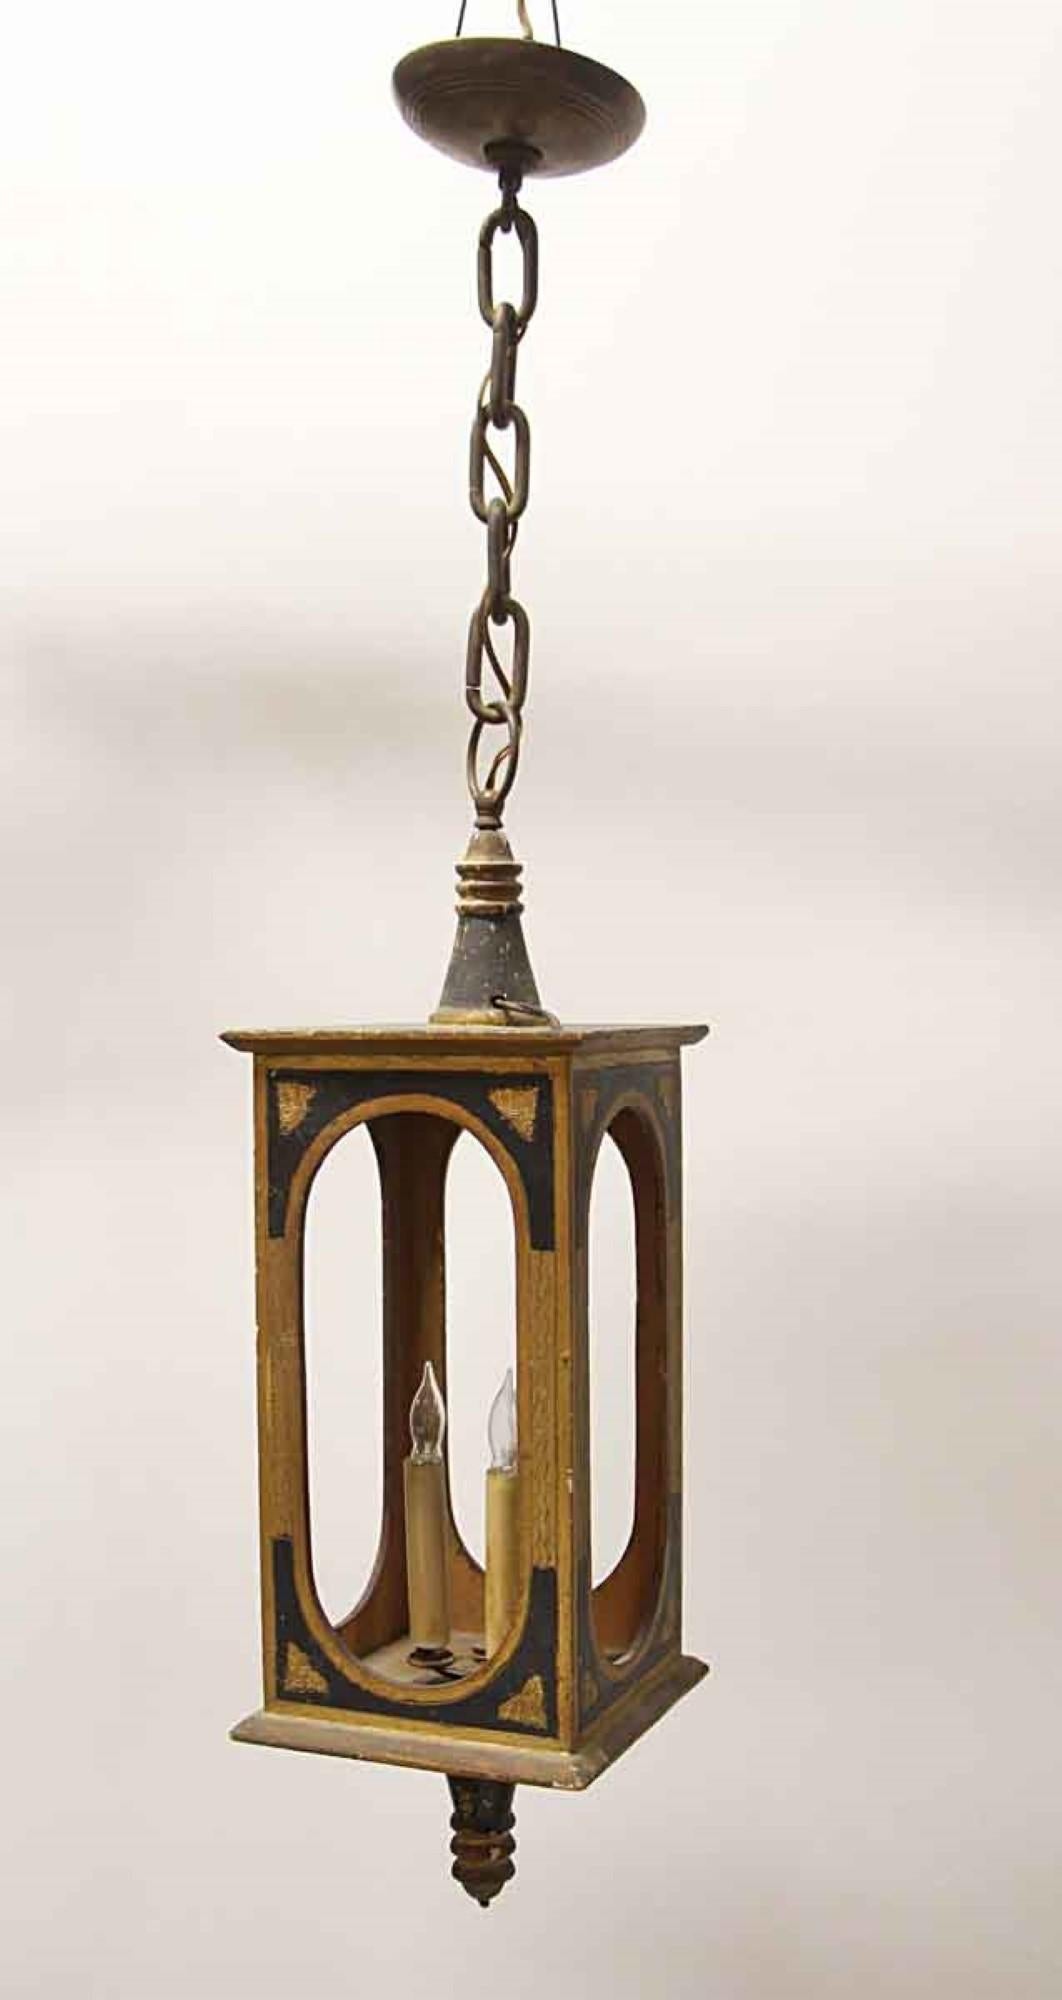 lanterne suspendue en bois des années 1940 avec des détails dorés et sculptés en noir. Utilise 3 ampoules candélabres. Le corps de la lanterne de style victorien a un cadre ouvert qui ne comporte pas de verre. Cet article peut être vu dans notre